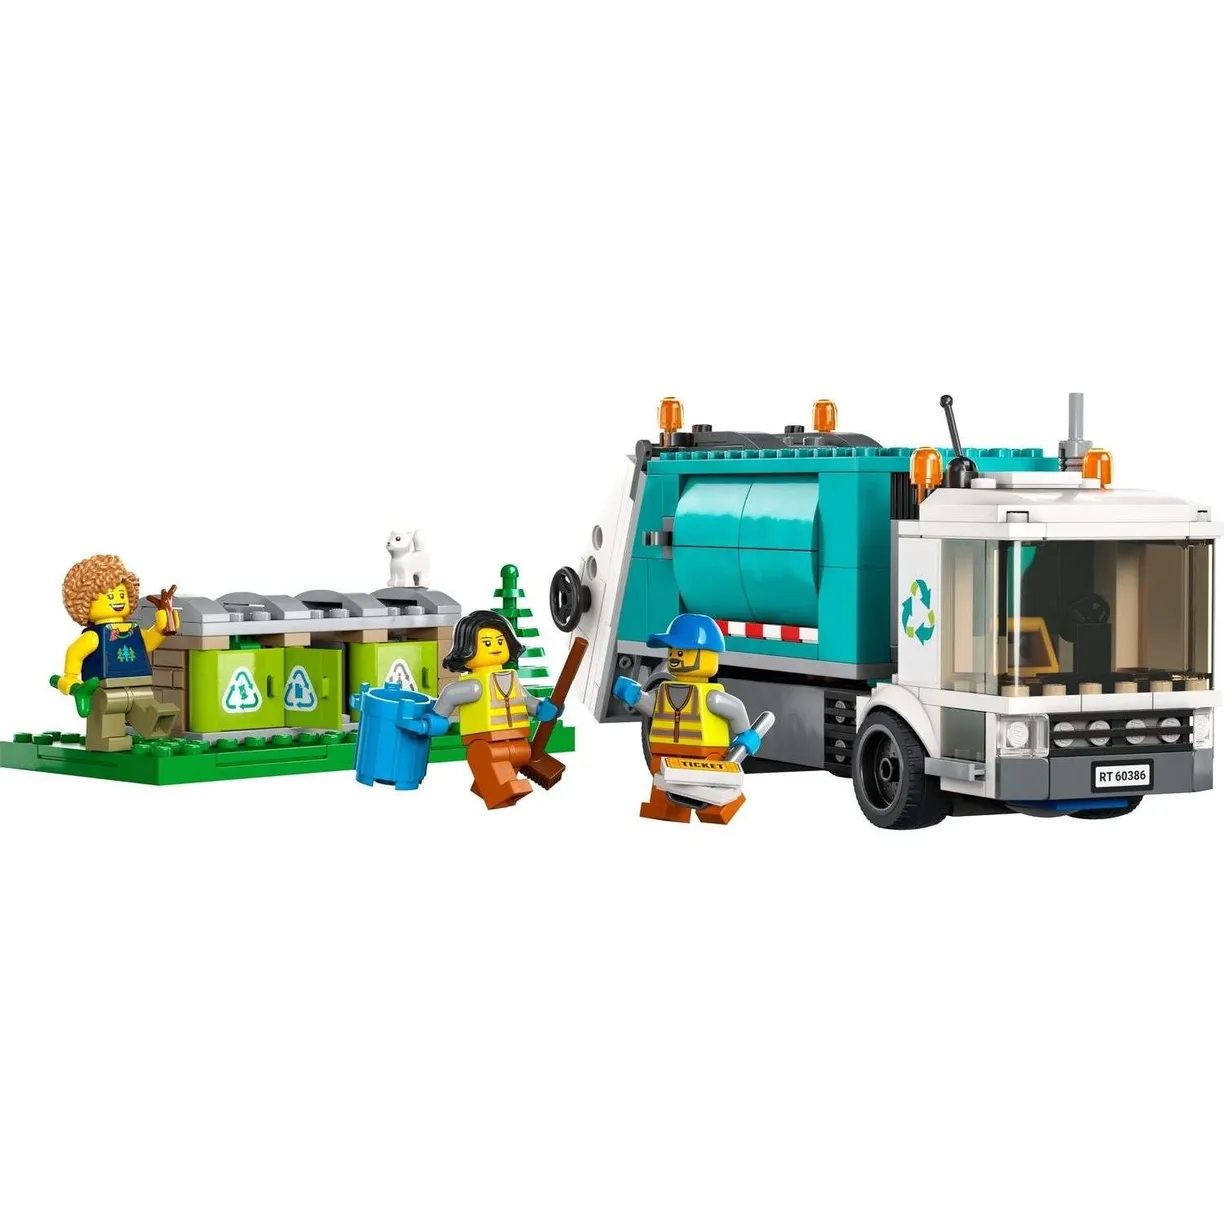 Lego City 60386 Грузовик для переработки отходов